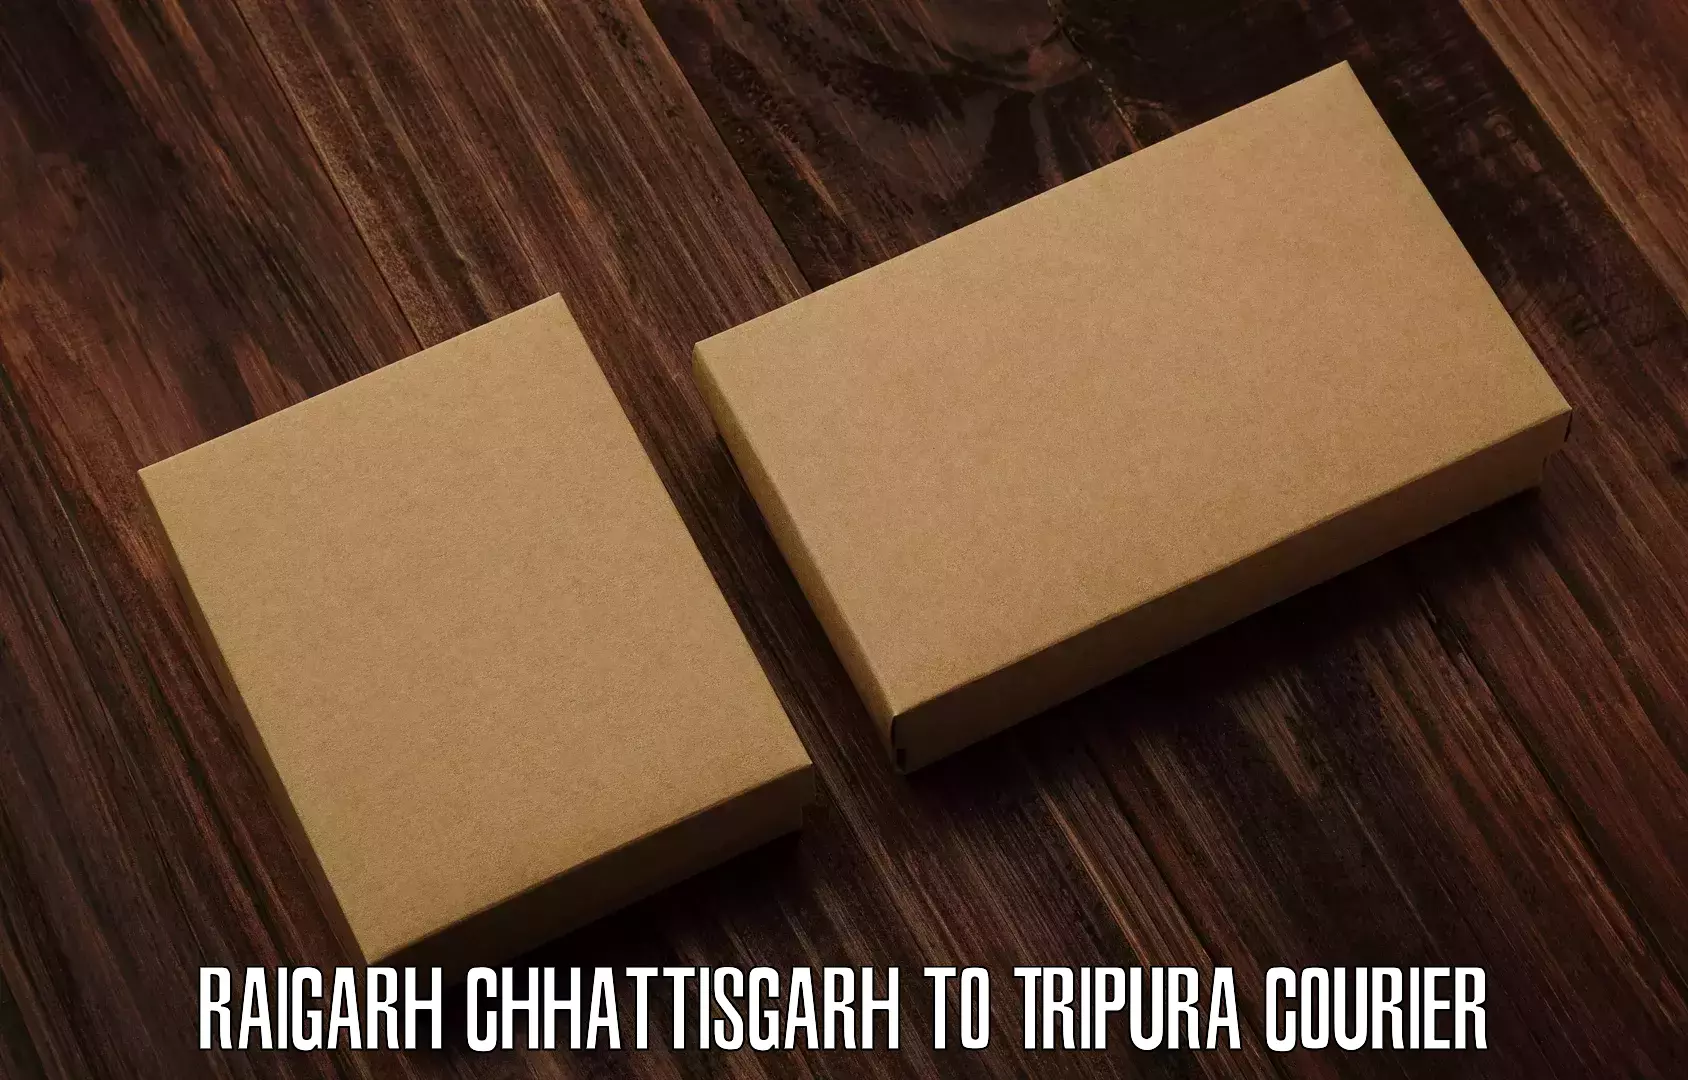 Express delivery solutions Raigarh Chhattisgarh to Sonamura